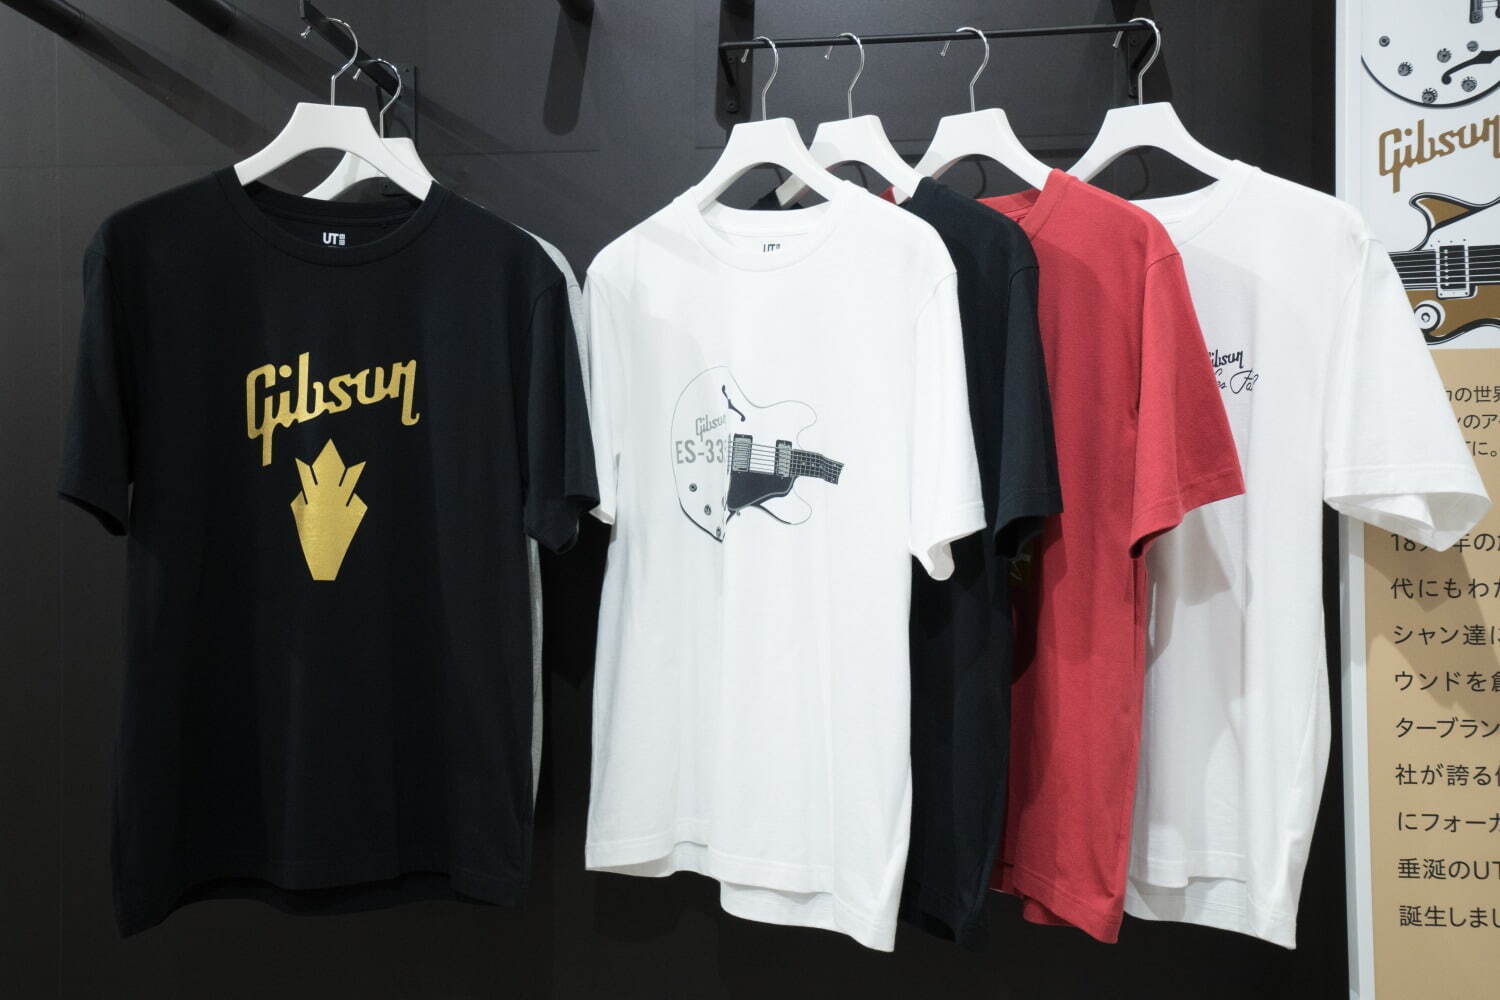 メンズTシャツ 各1,500円
© 2021 Gibson Brands, Inc. All rights reserved.